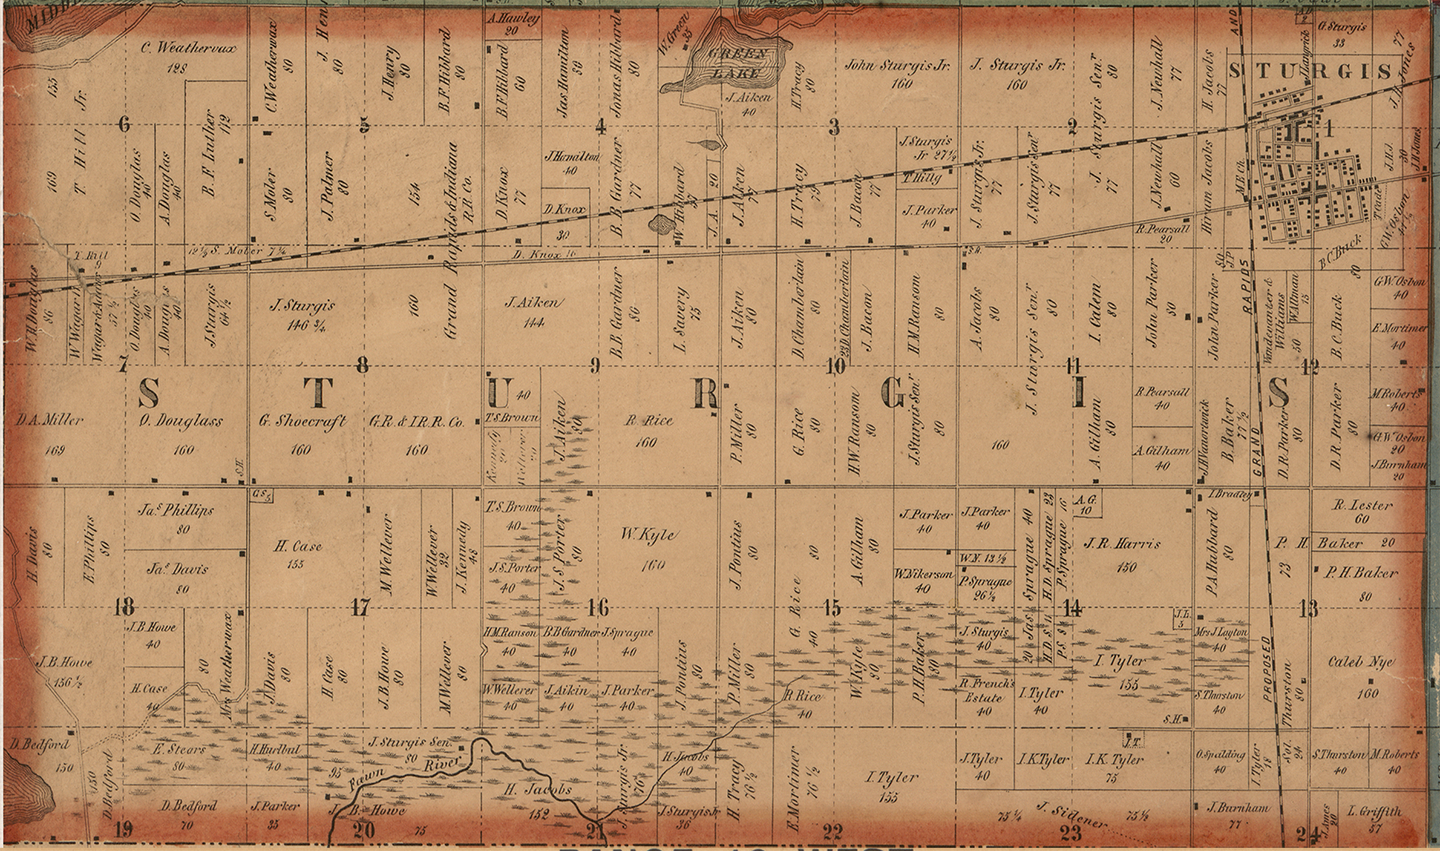 1858 Sturgis Township Michigan landownership map